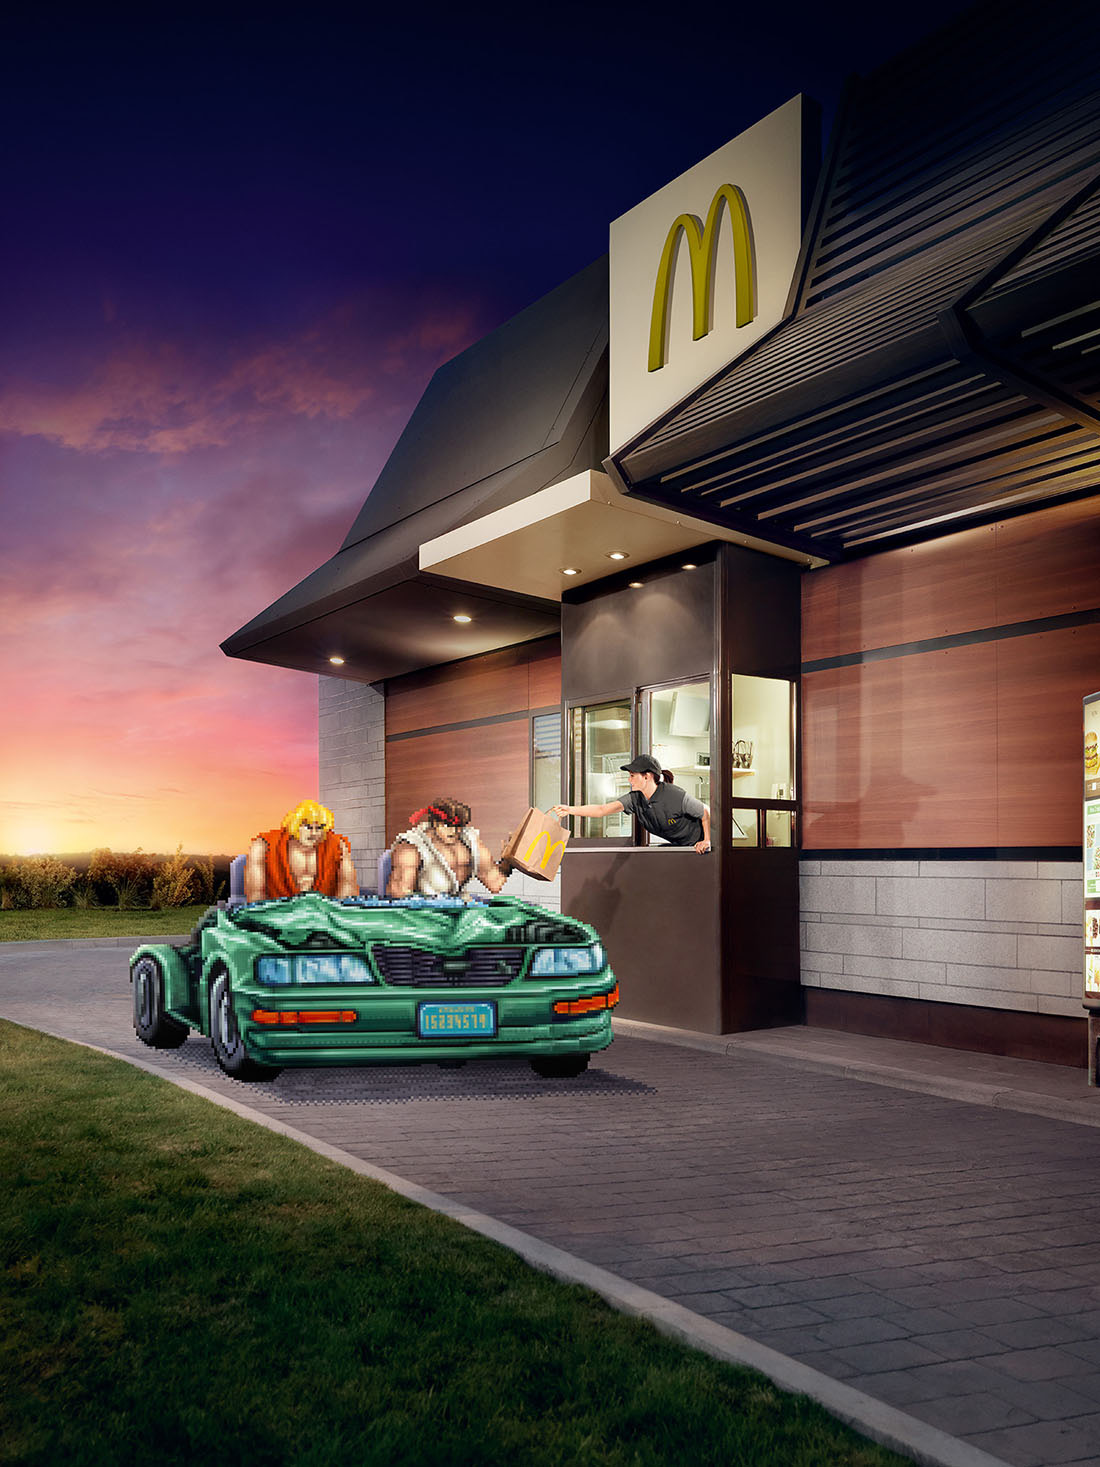 McDonald's - BETC @ Sparklink